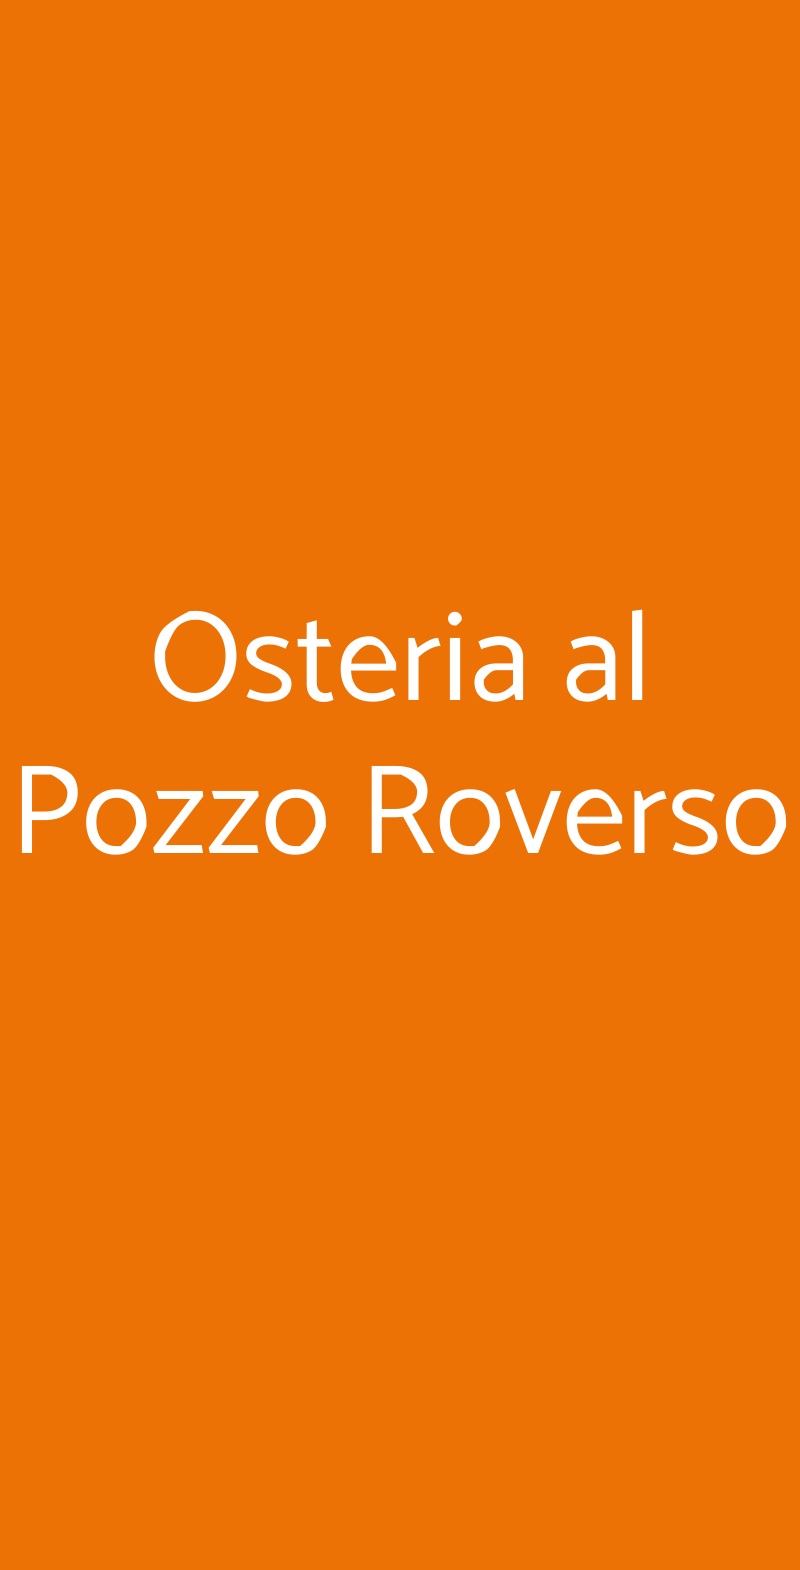 Osteria al Pozzo Roverso Venezia menù 1 pagina